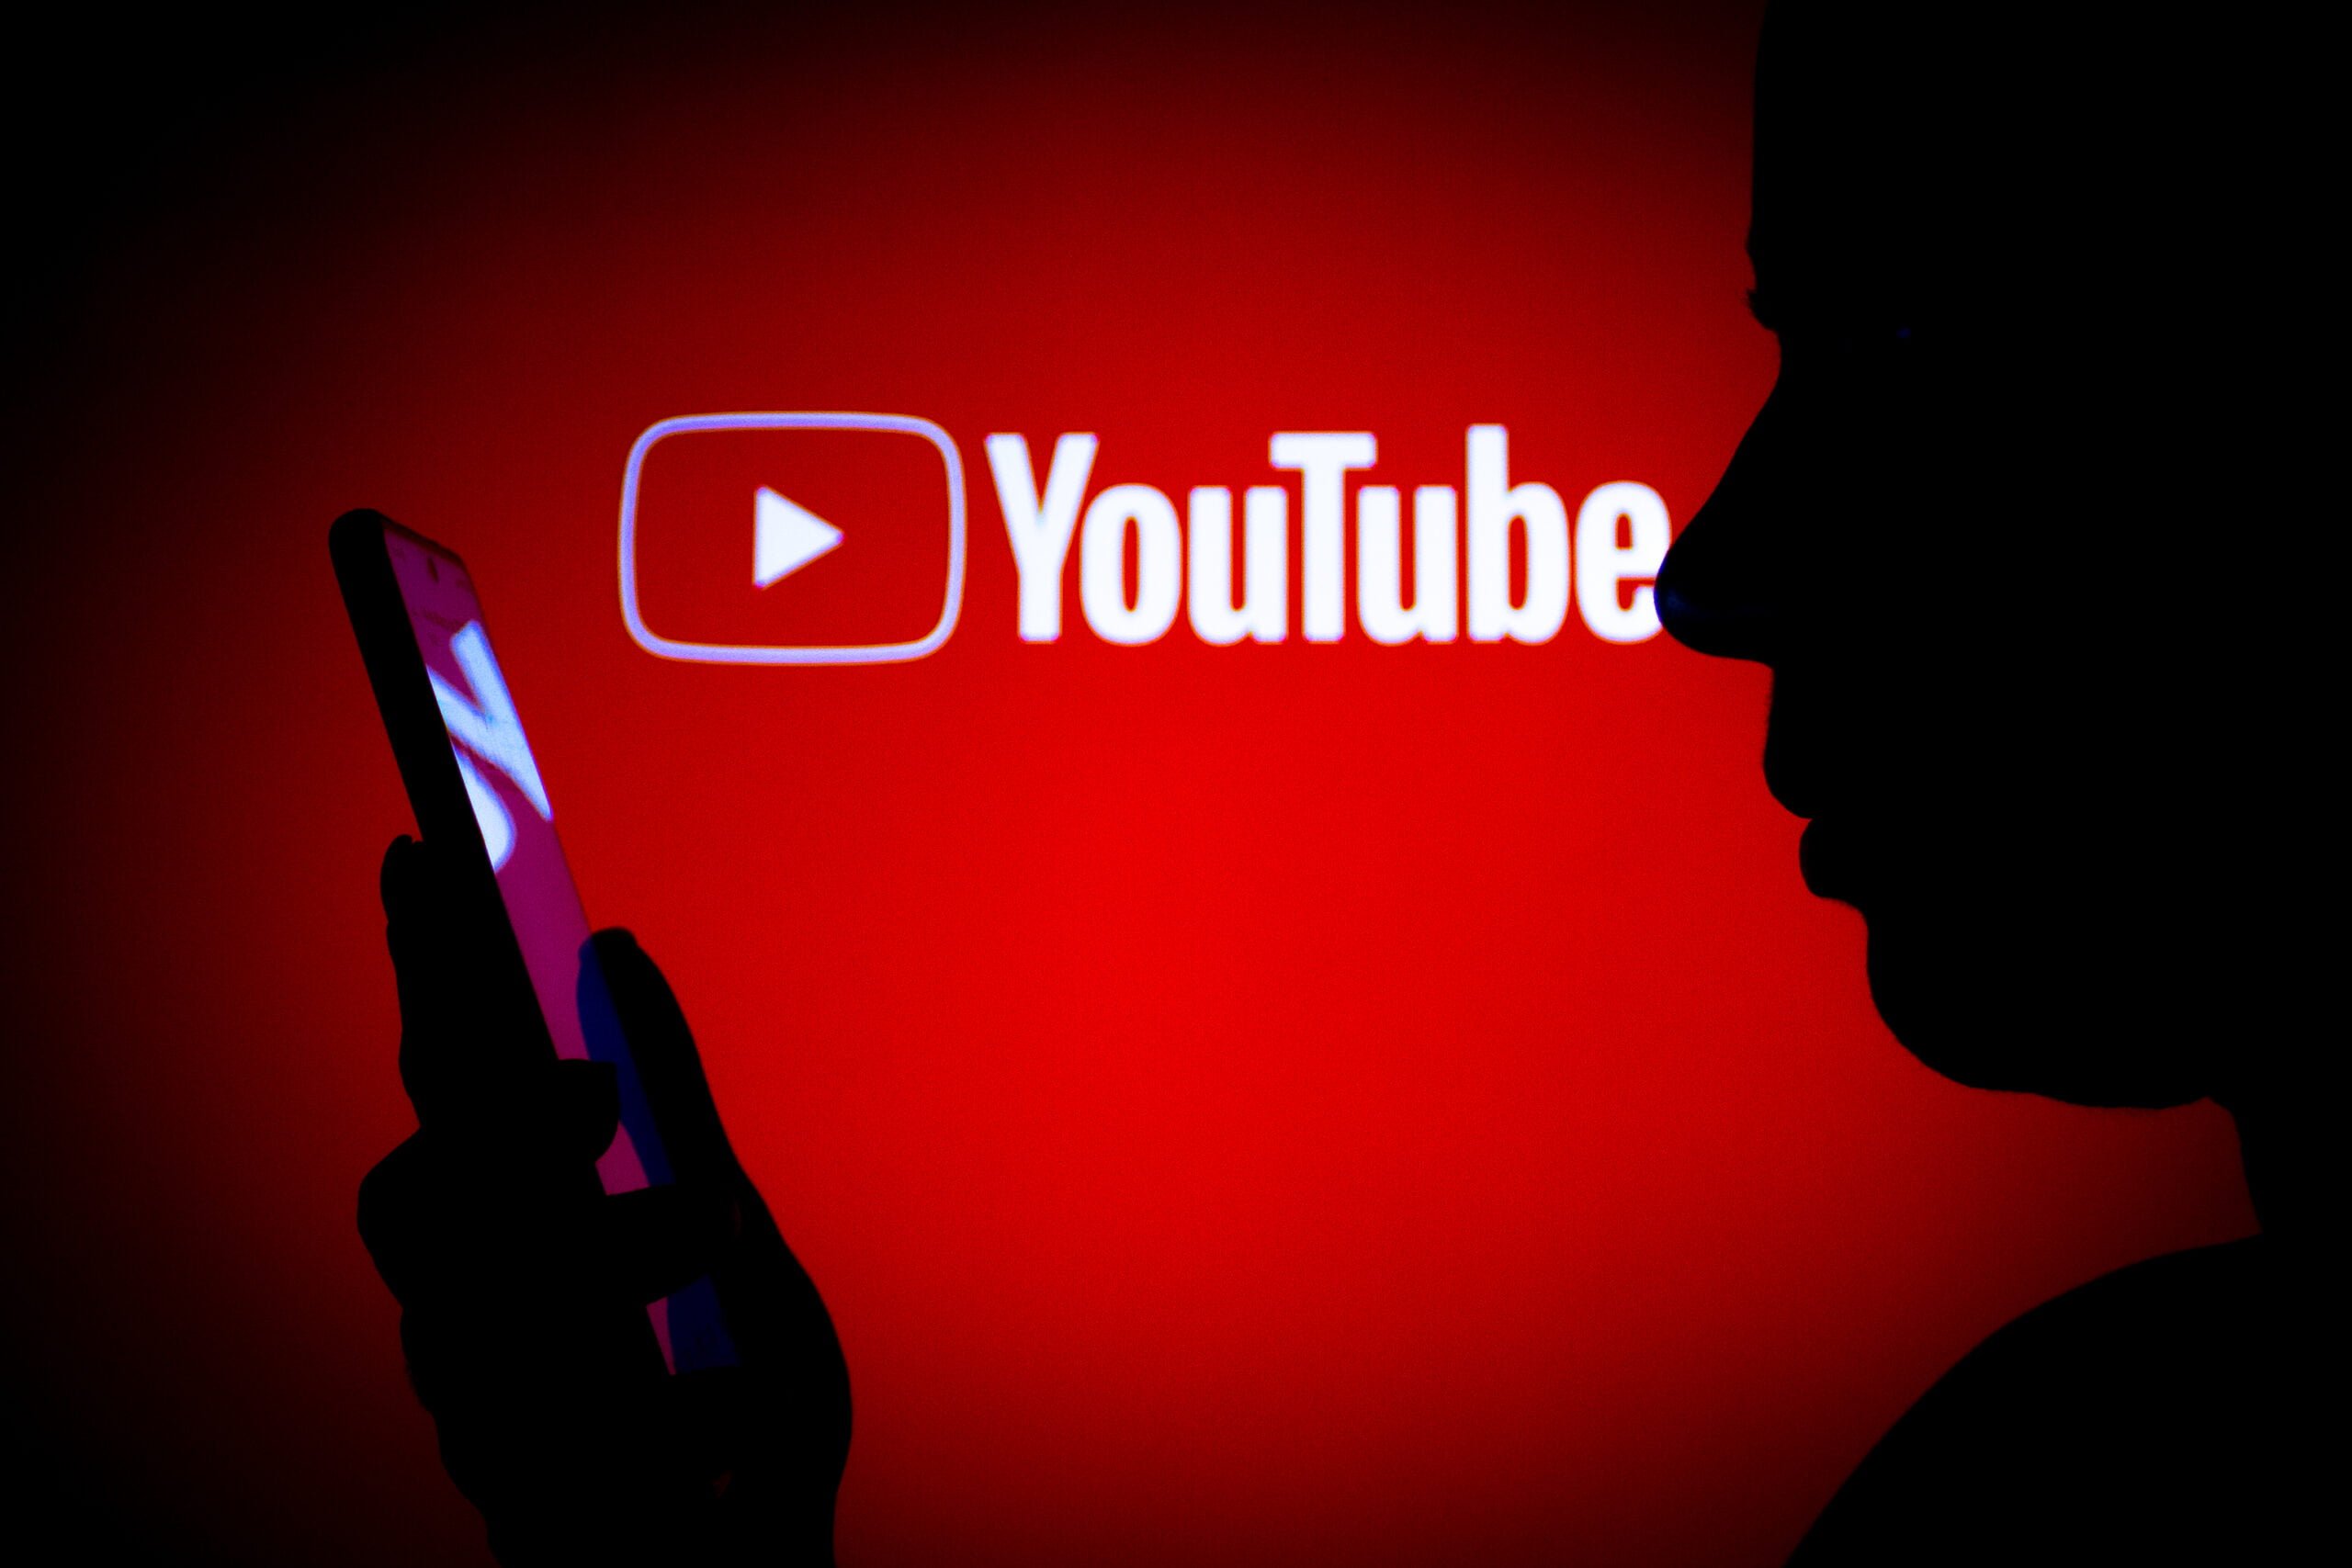 Sylwetka osoby trzymającej smartfon na czerwonym tle z logo YouTube.